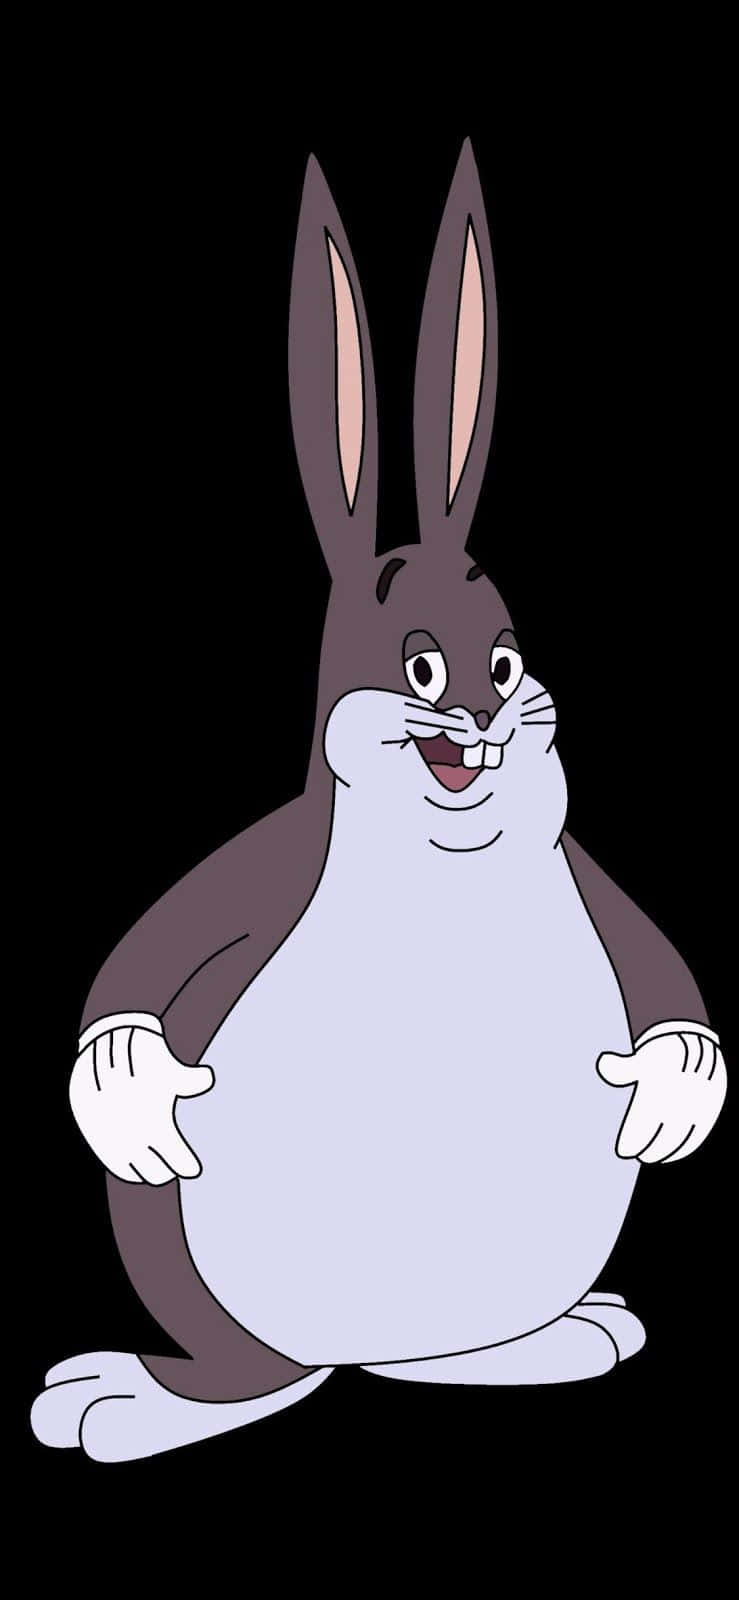 A Cartoon Rabbit With Big Ears And Big Feet